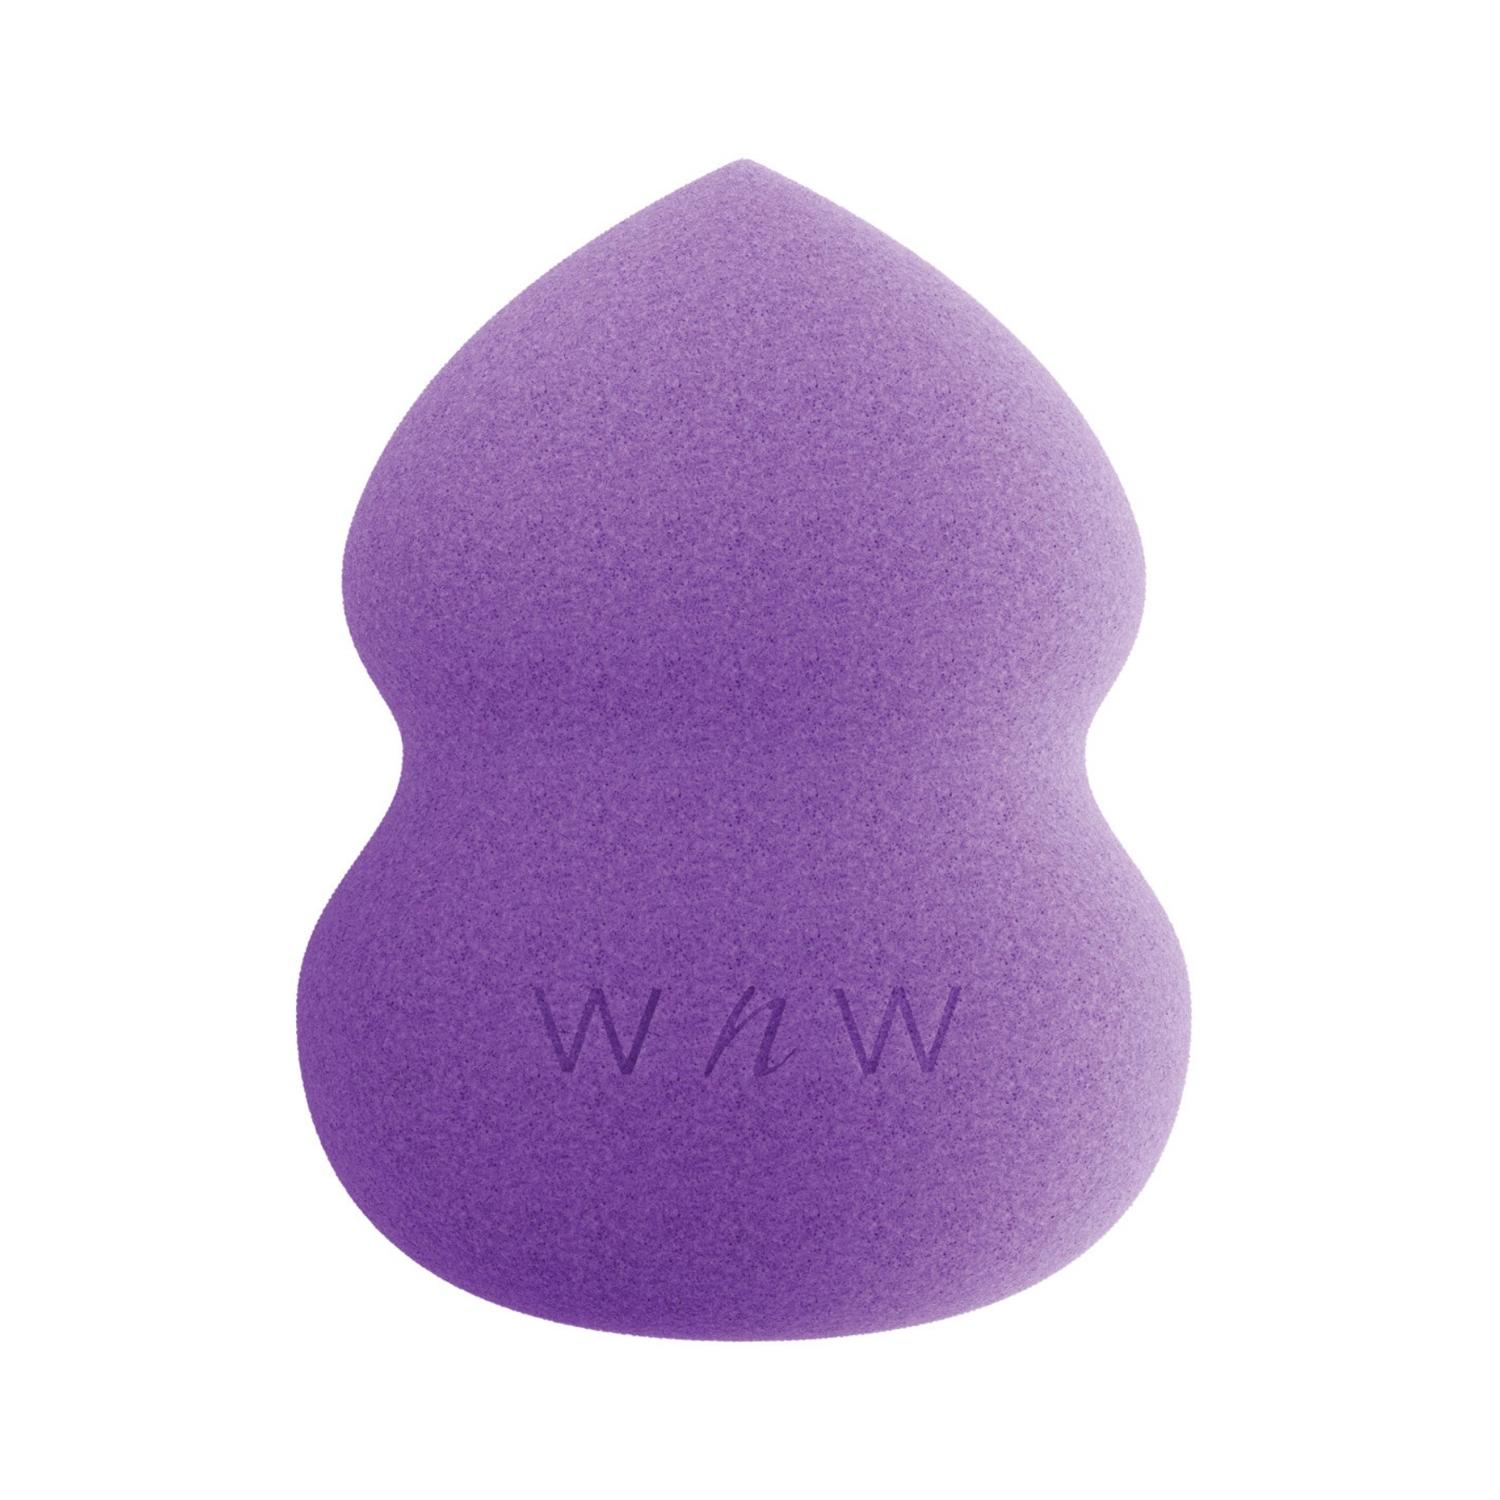 wet n wild hourglass makeup sponge - purple